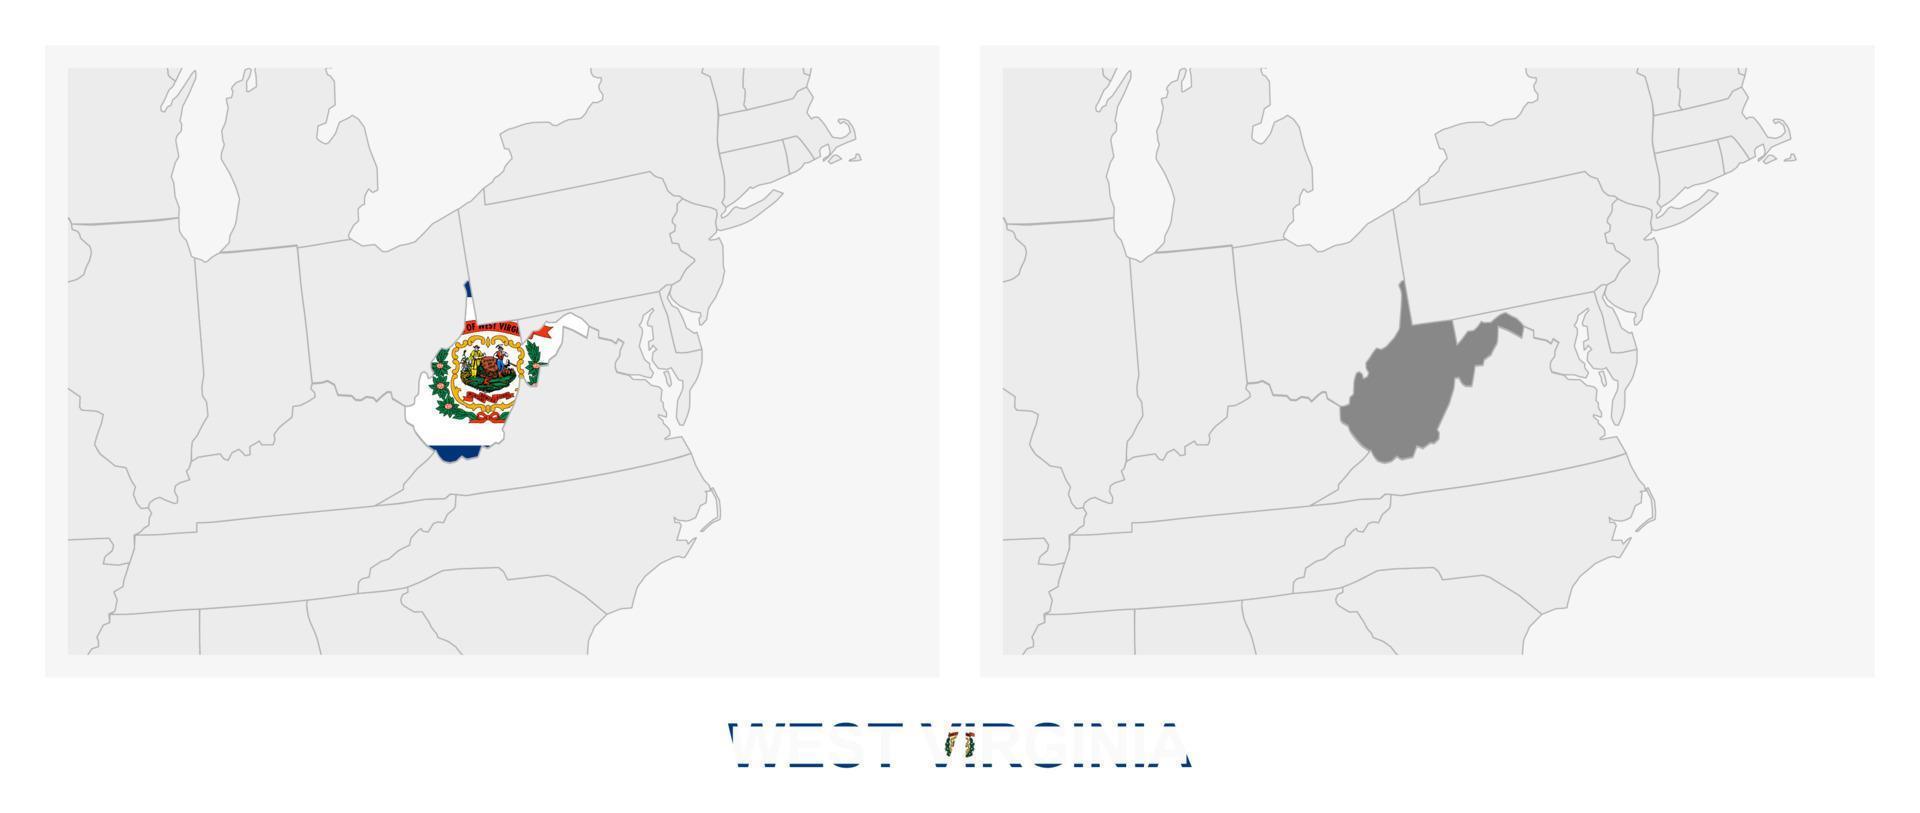 dos versiones del mapa del estado estadounidense de virginia occidental, con la bandera de virginia occidental y resaltada en gris oscuro. vector